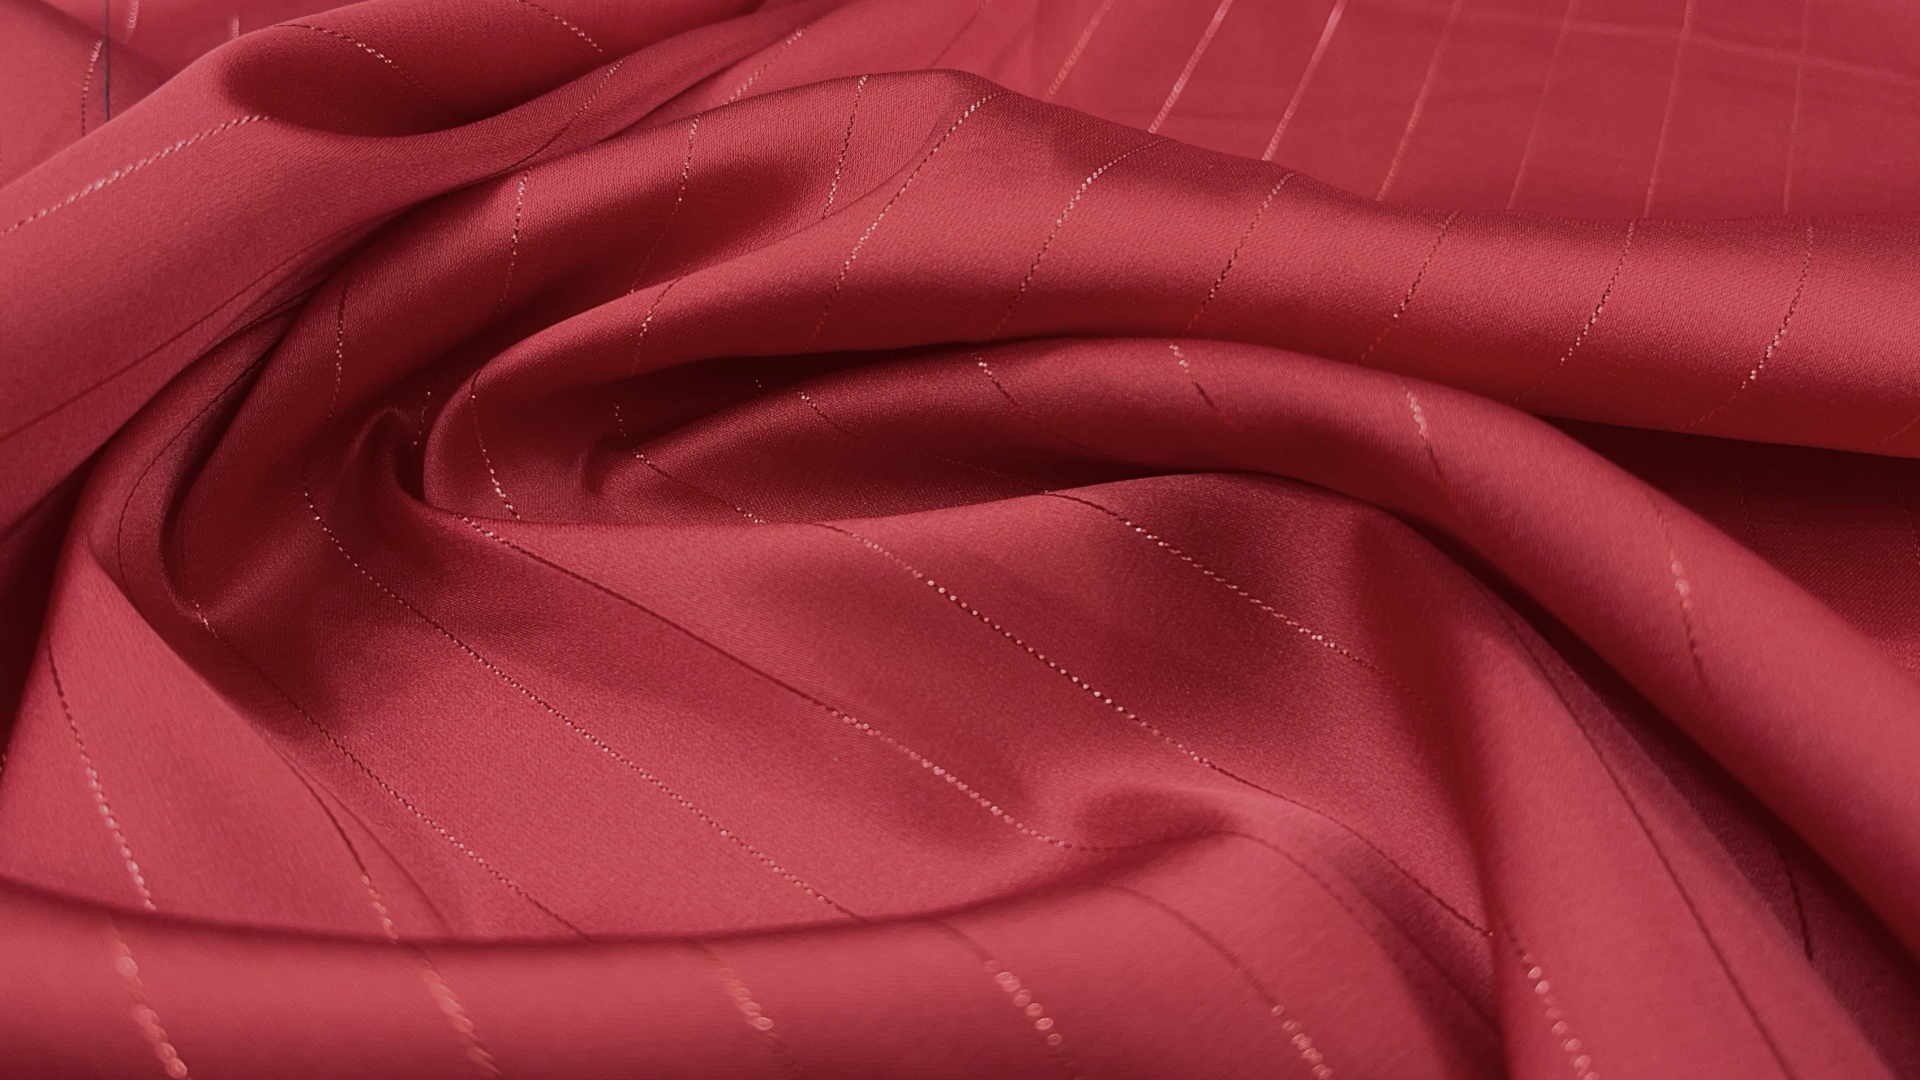 Атлас Армани красного цвета с люрексовой продольной нитью. Атлас изумительного качества, струящийся, с матовым переливом как у натурального шёлка и с бархатистой изнанкой. Идеален для пошива вечерней рубашки, блузы, топа или платья.